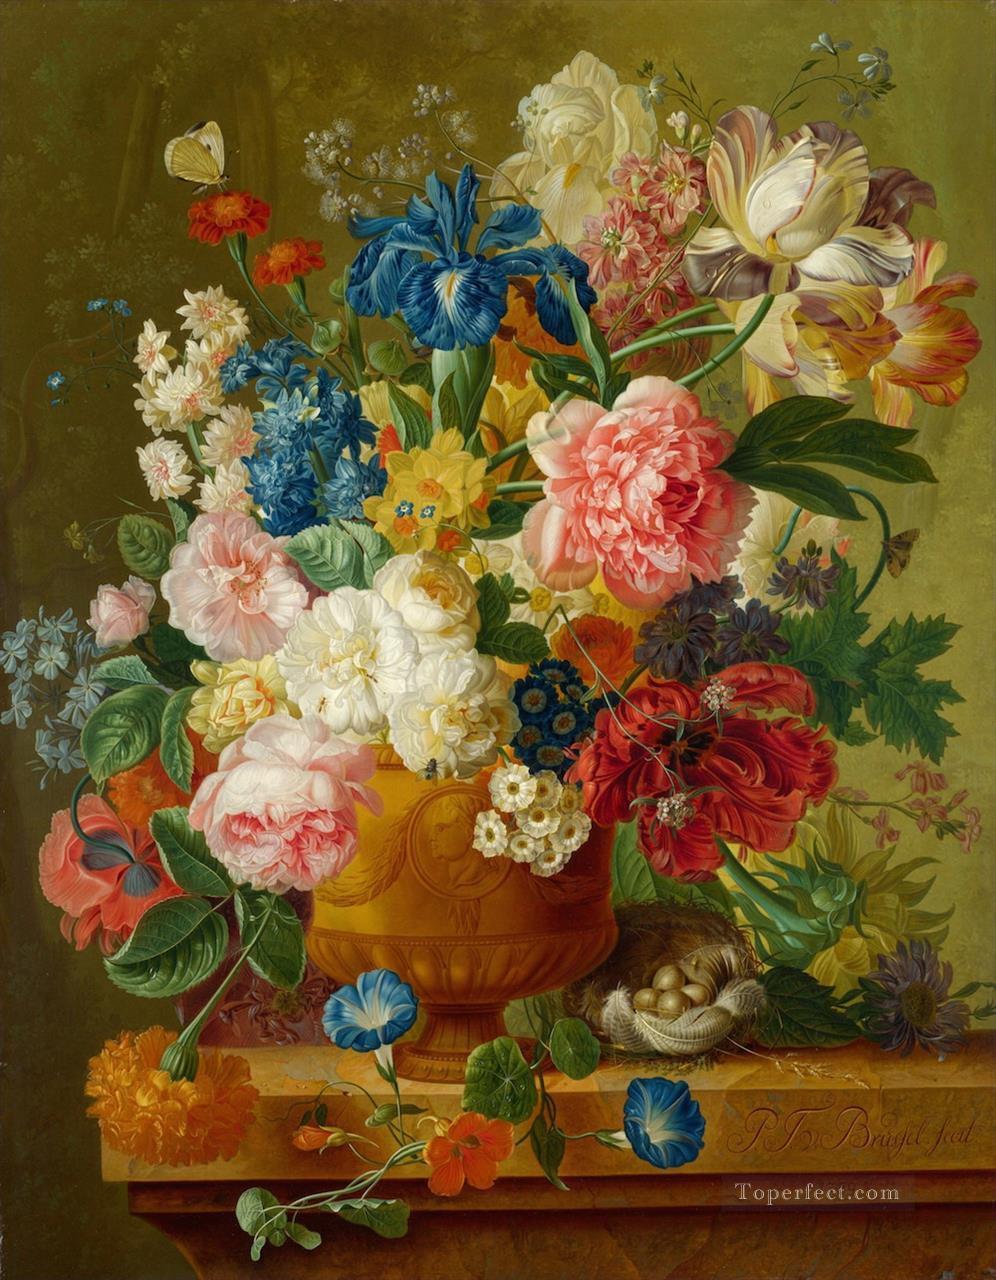 paulus theodorus van brussel flowers in a vase Flowering Oil Paintings